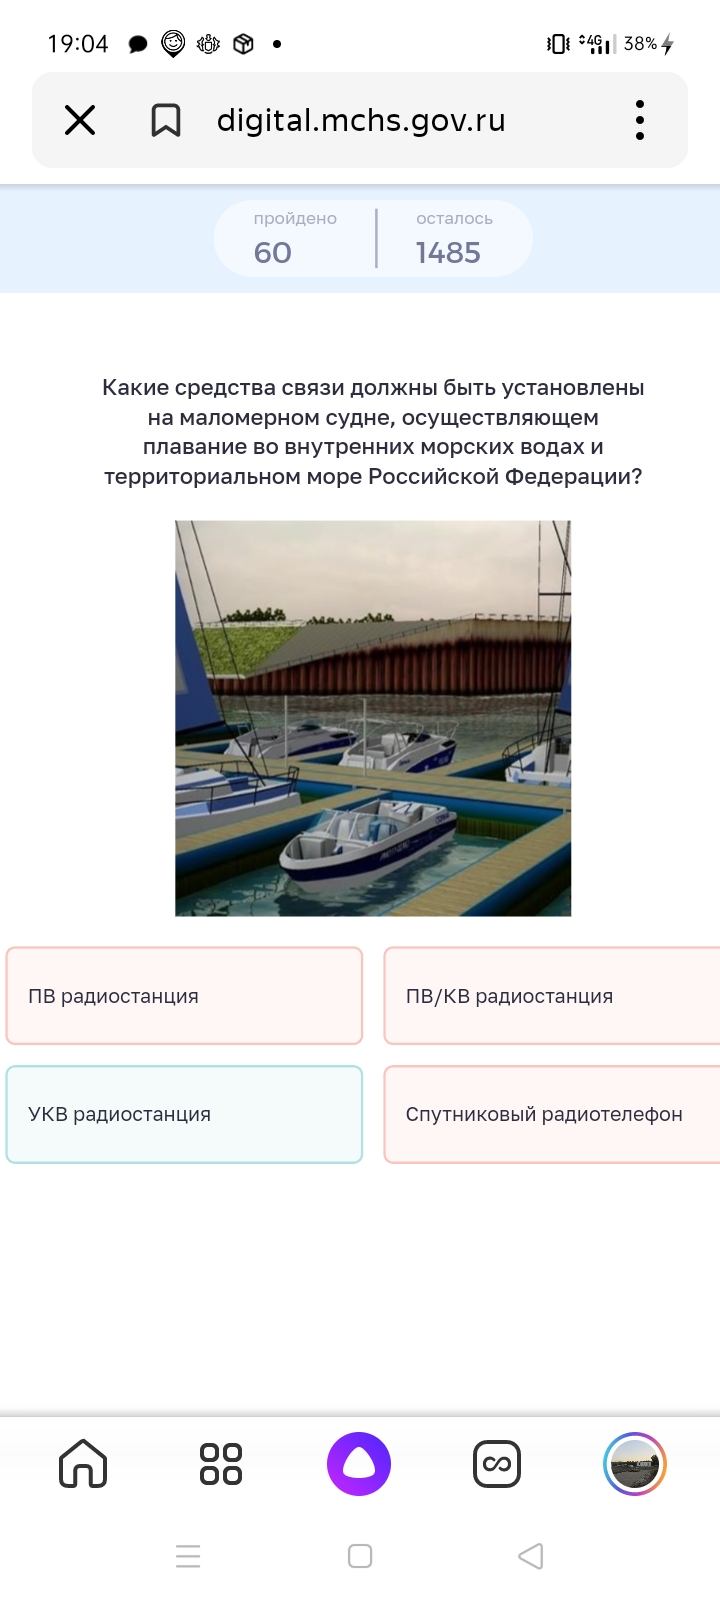 Какие средства связи должны быть установлены в маломерном суде, осуществляющим плавание во внутренних морских водах и территориальном море Российской Федерации? 